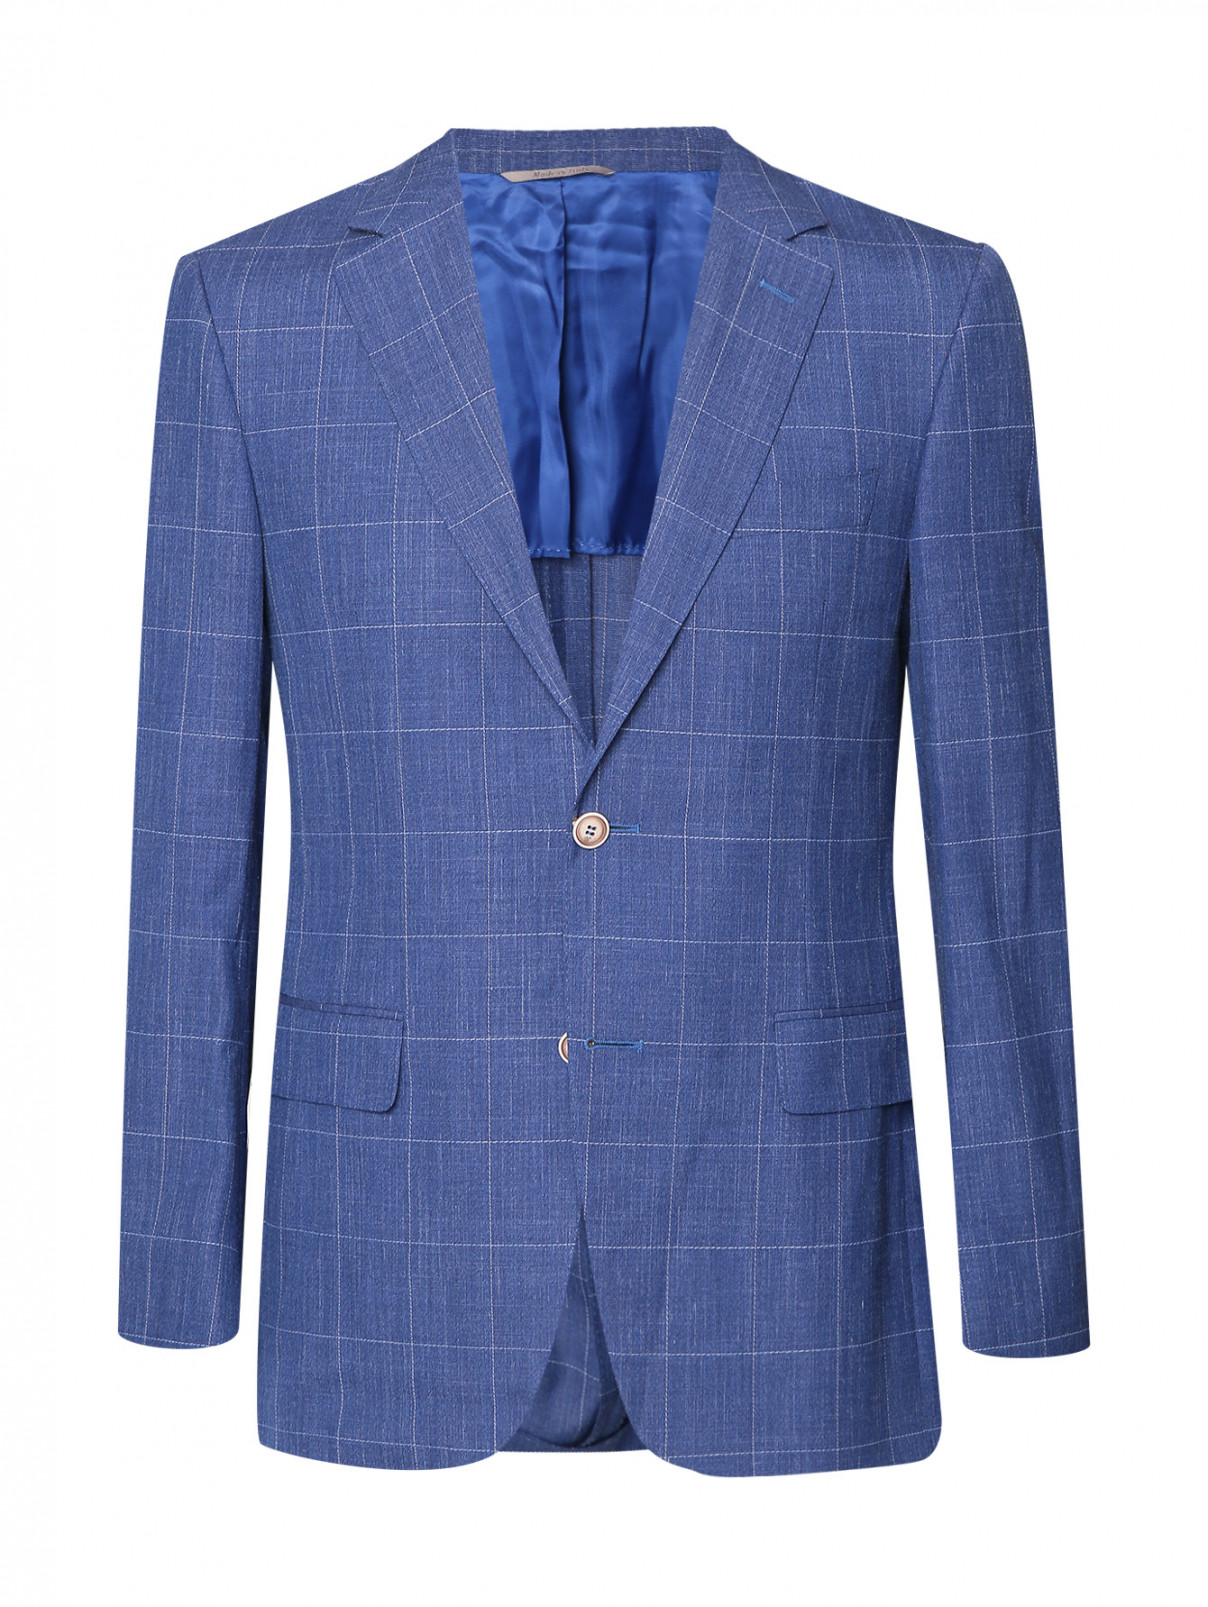 Пиджак из шерсти с узором клетка Canali  –  Общий вид  – Цвет:  Синий